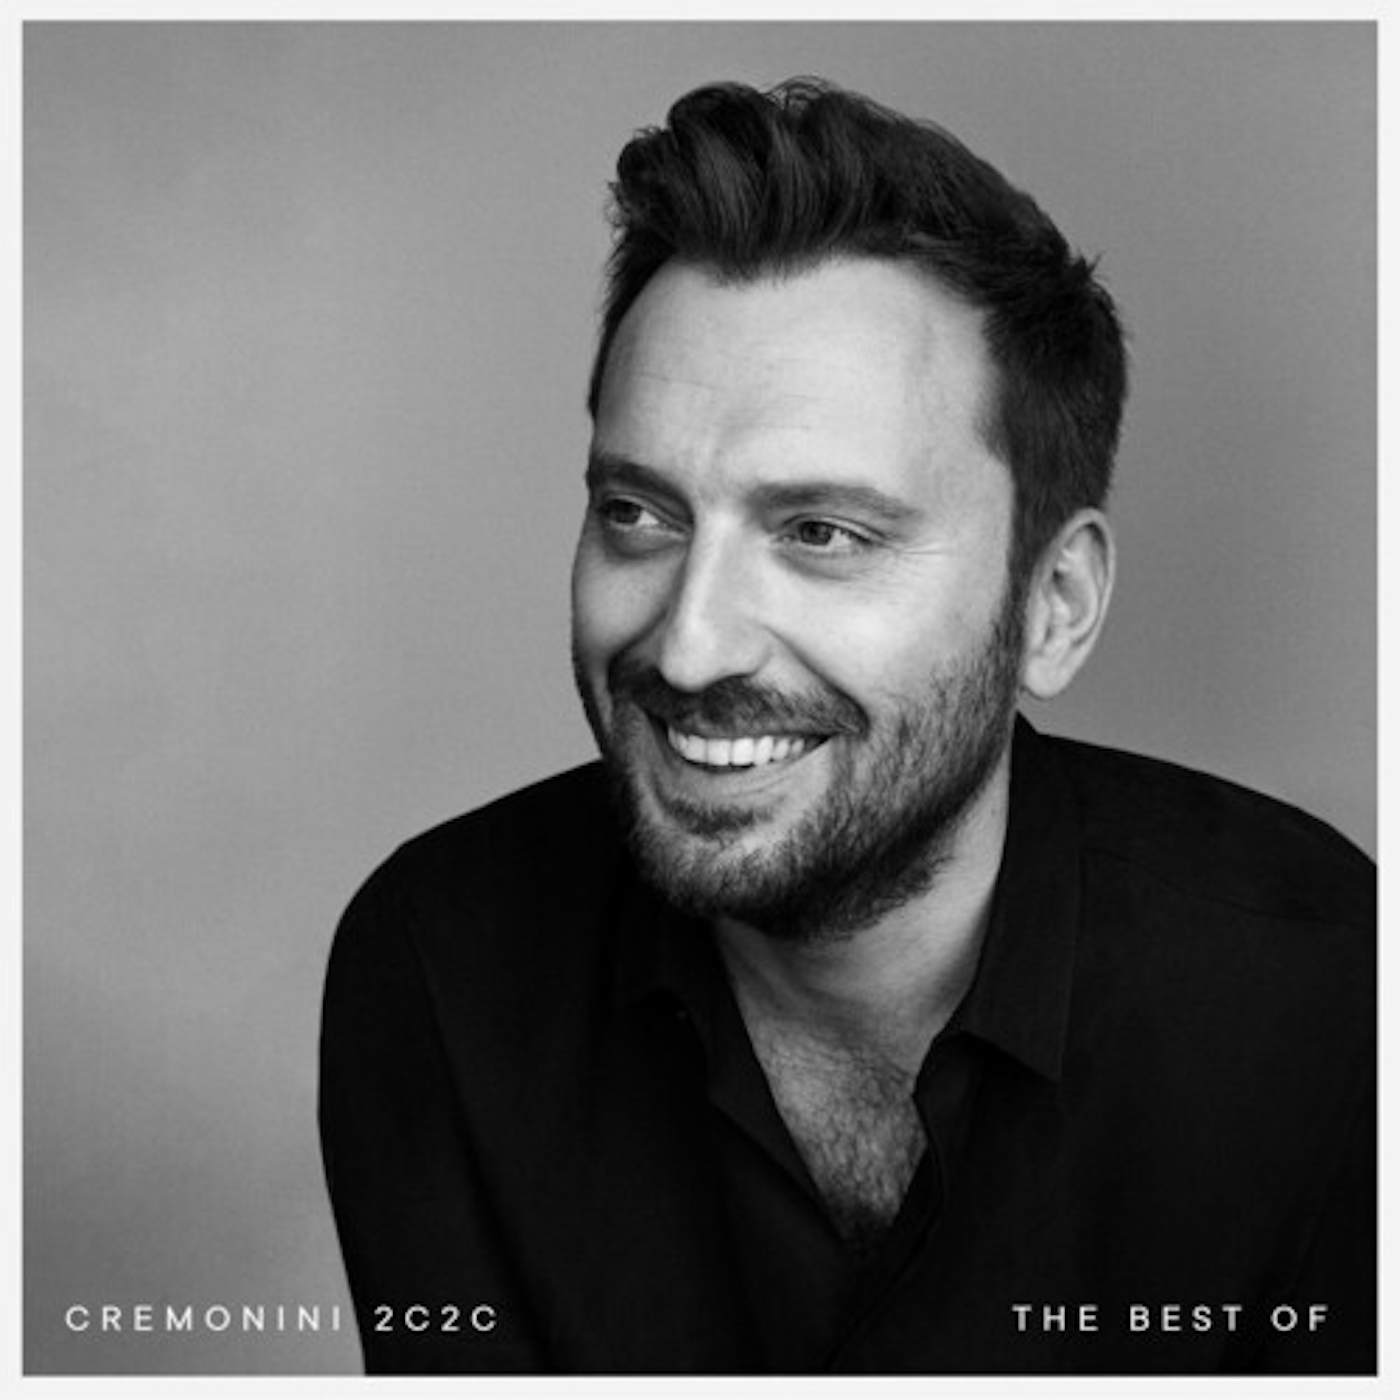 Cesare Cremonini CREMONINI 2C2C THE BEST OF CD